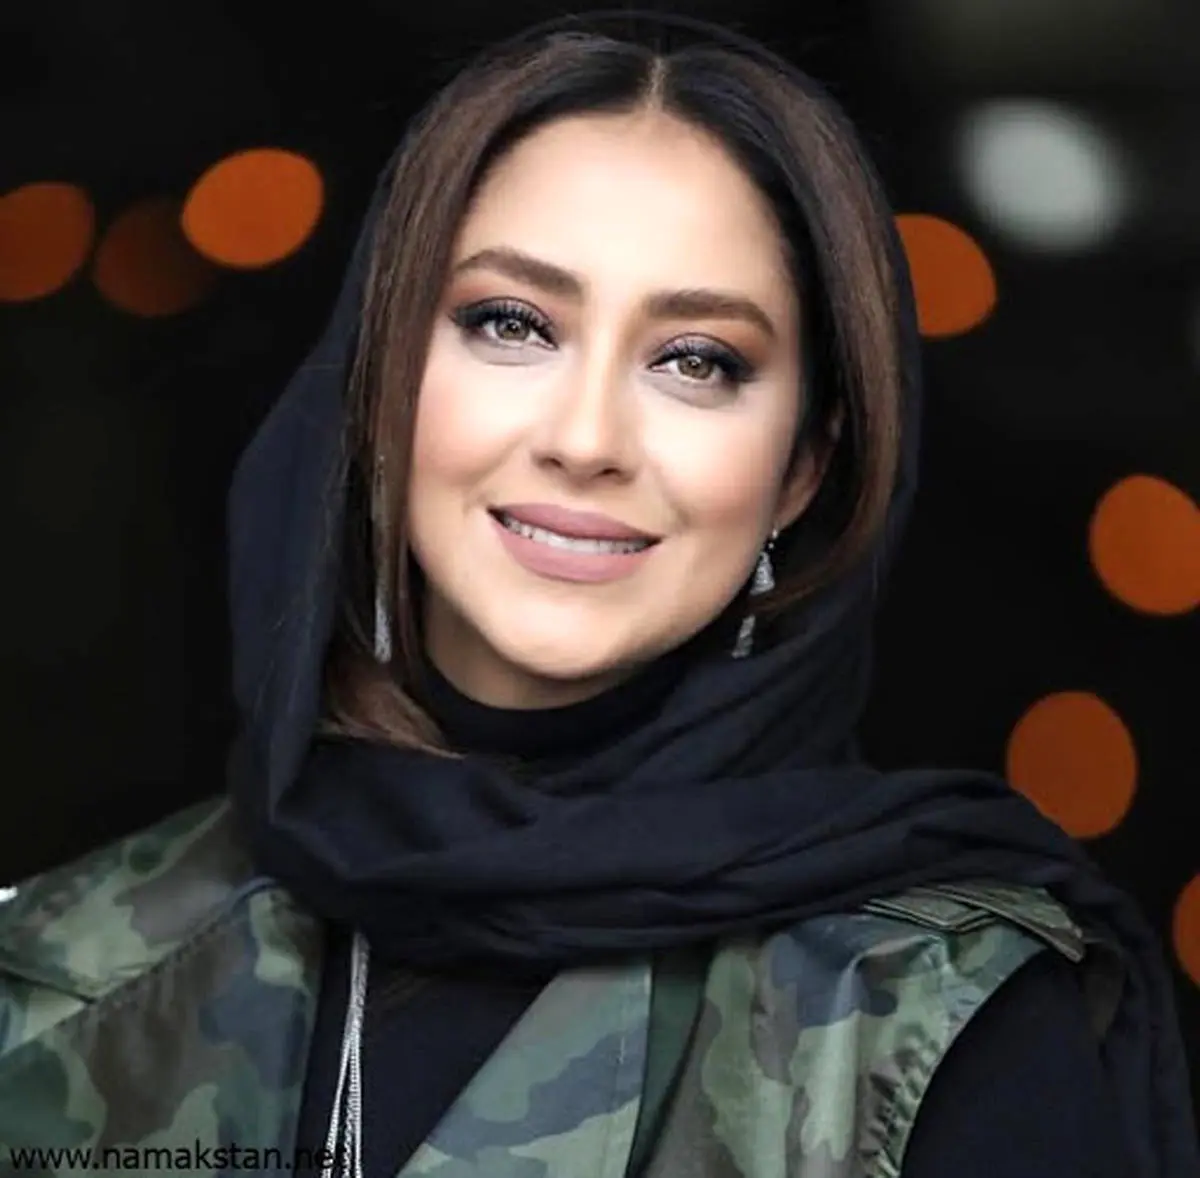 بهاره کیان افشار در بین ۱۰ زن زیبای مسلمان + عکس